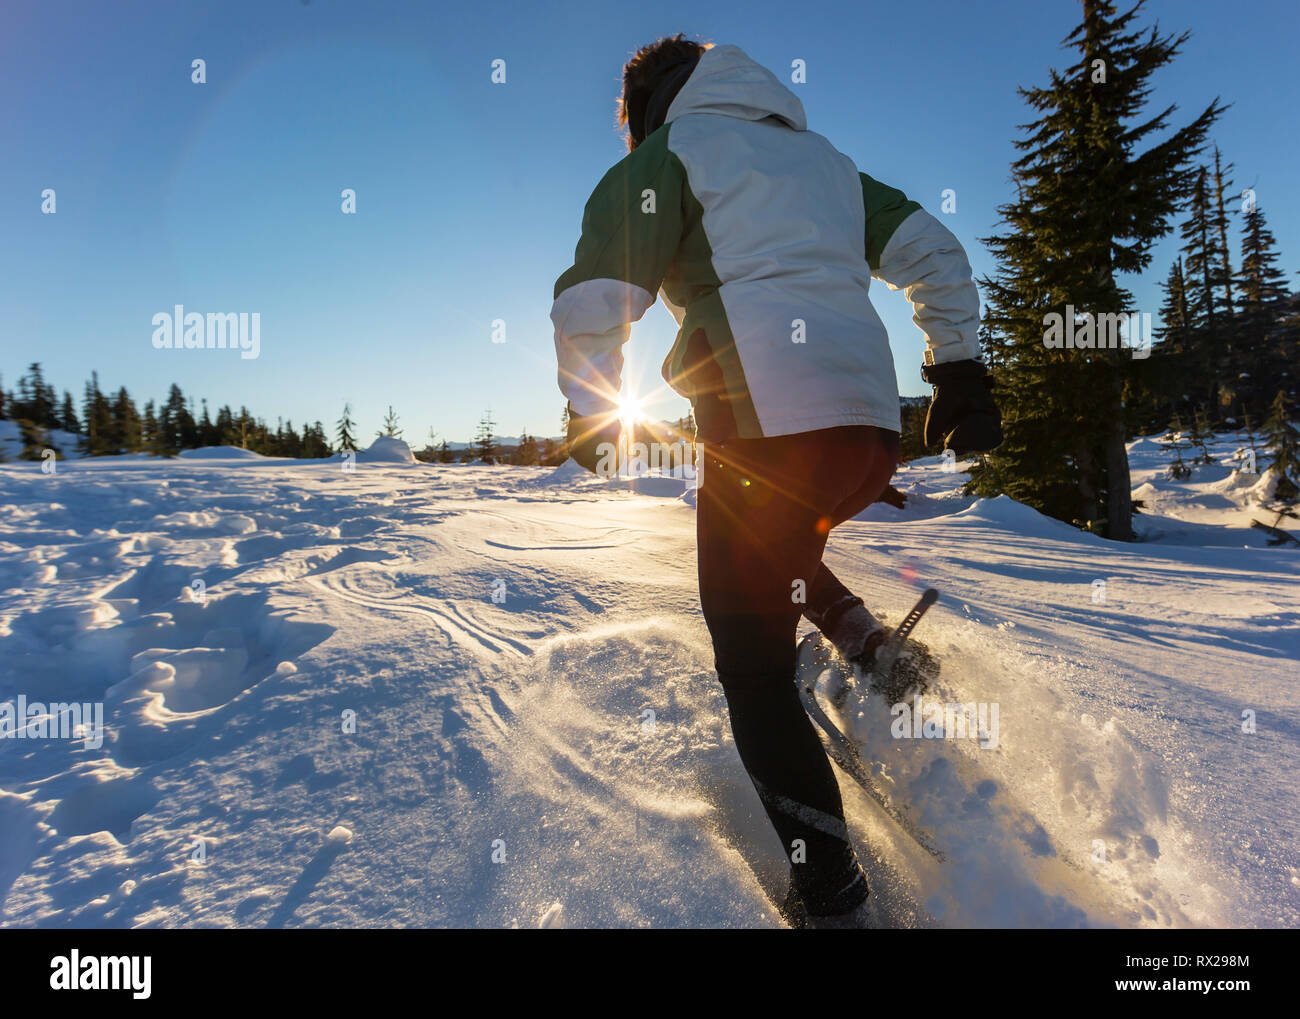 El sol poniente destaca una raquetas de nieve que corre en nieve seca y polvorienta cerca de Mt. Washington. Comox Valley, Vancouver Island, British Columbia, Canadá. Foto de stock